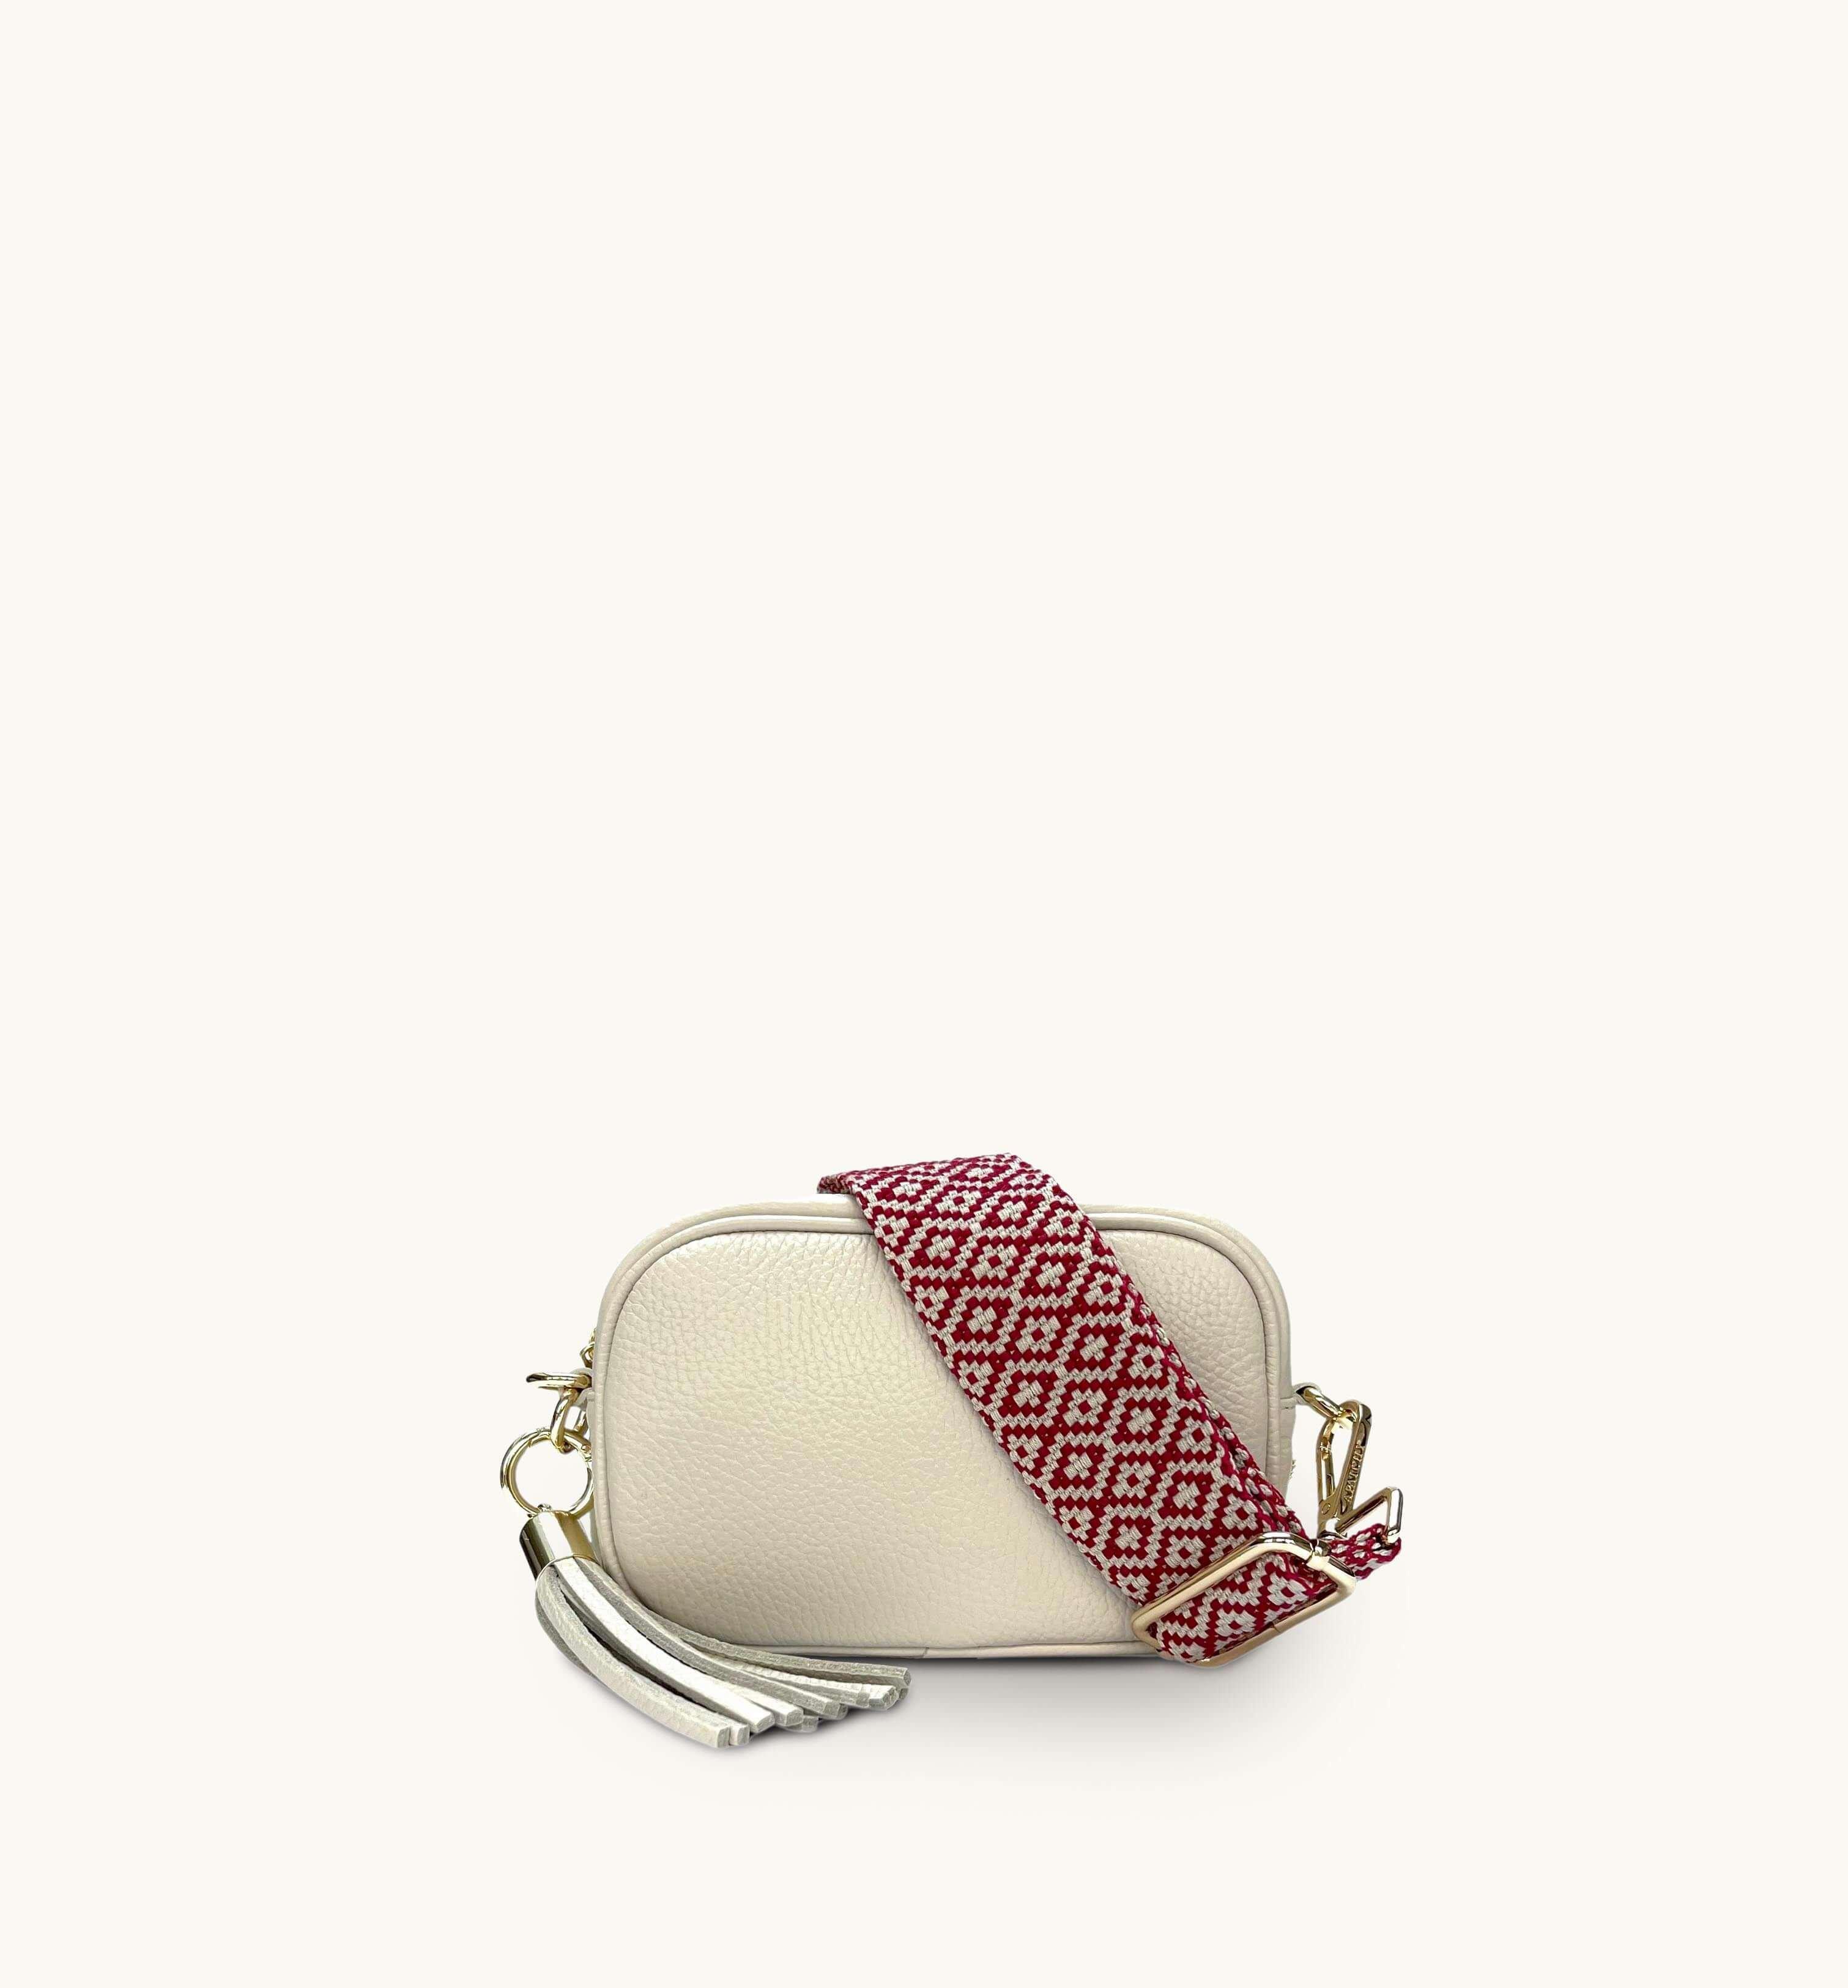 Кожаная сумка для телефона Mini с кисточками и ремешком с красной вышивкой крестиком Apatchy London, бежевый цена и фото